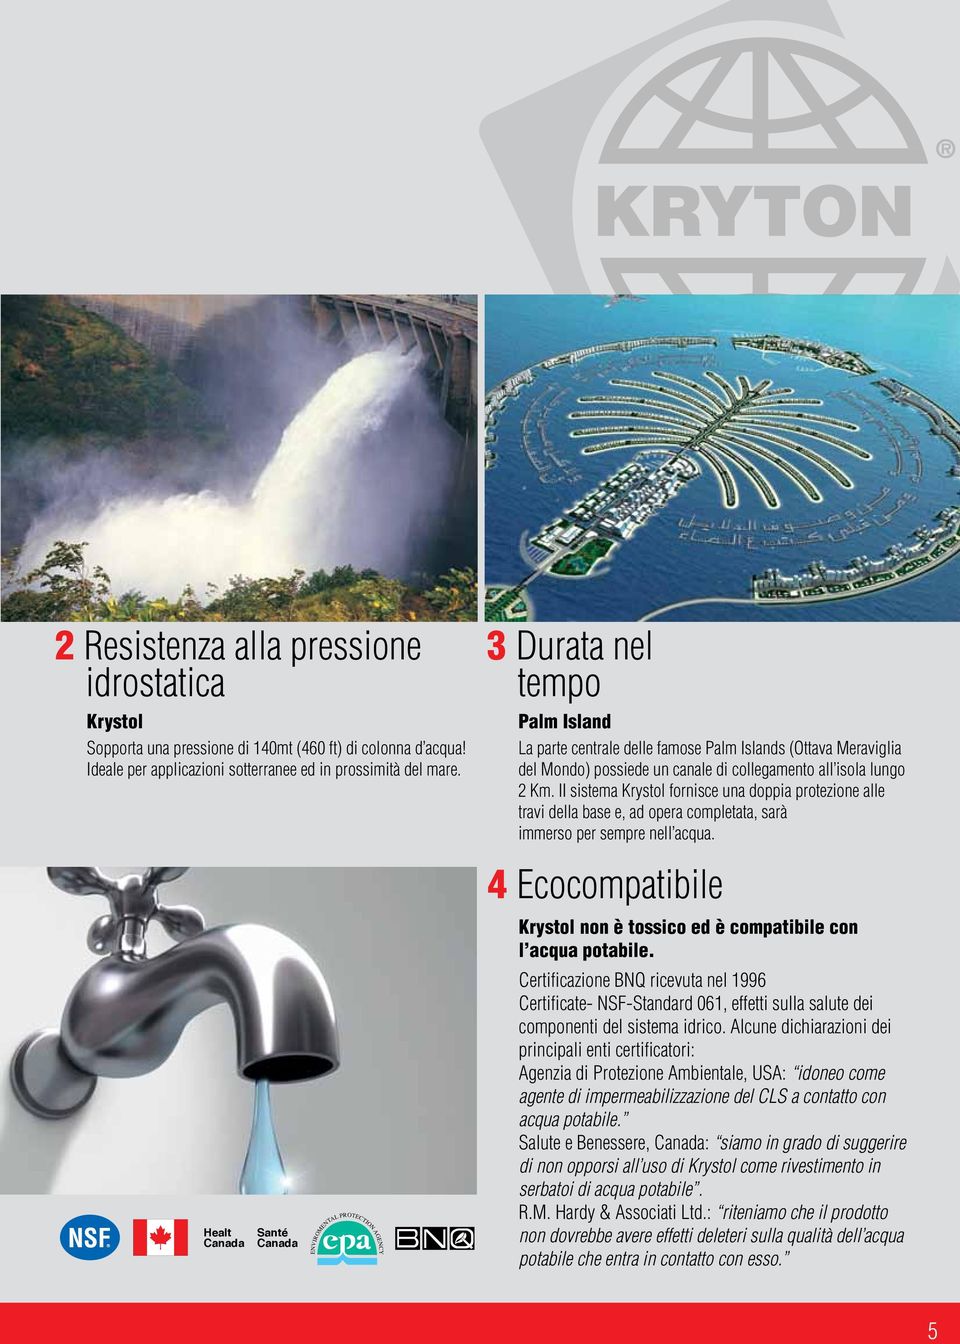 II sistema Krystol fornisce una doppia protezione alle travi della base e, ad opera completata, sarà immerso per sempre nell acqua.